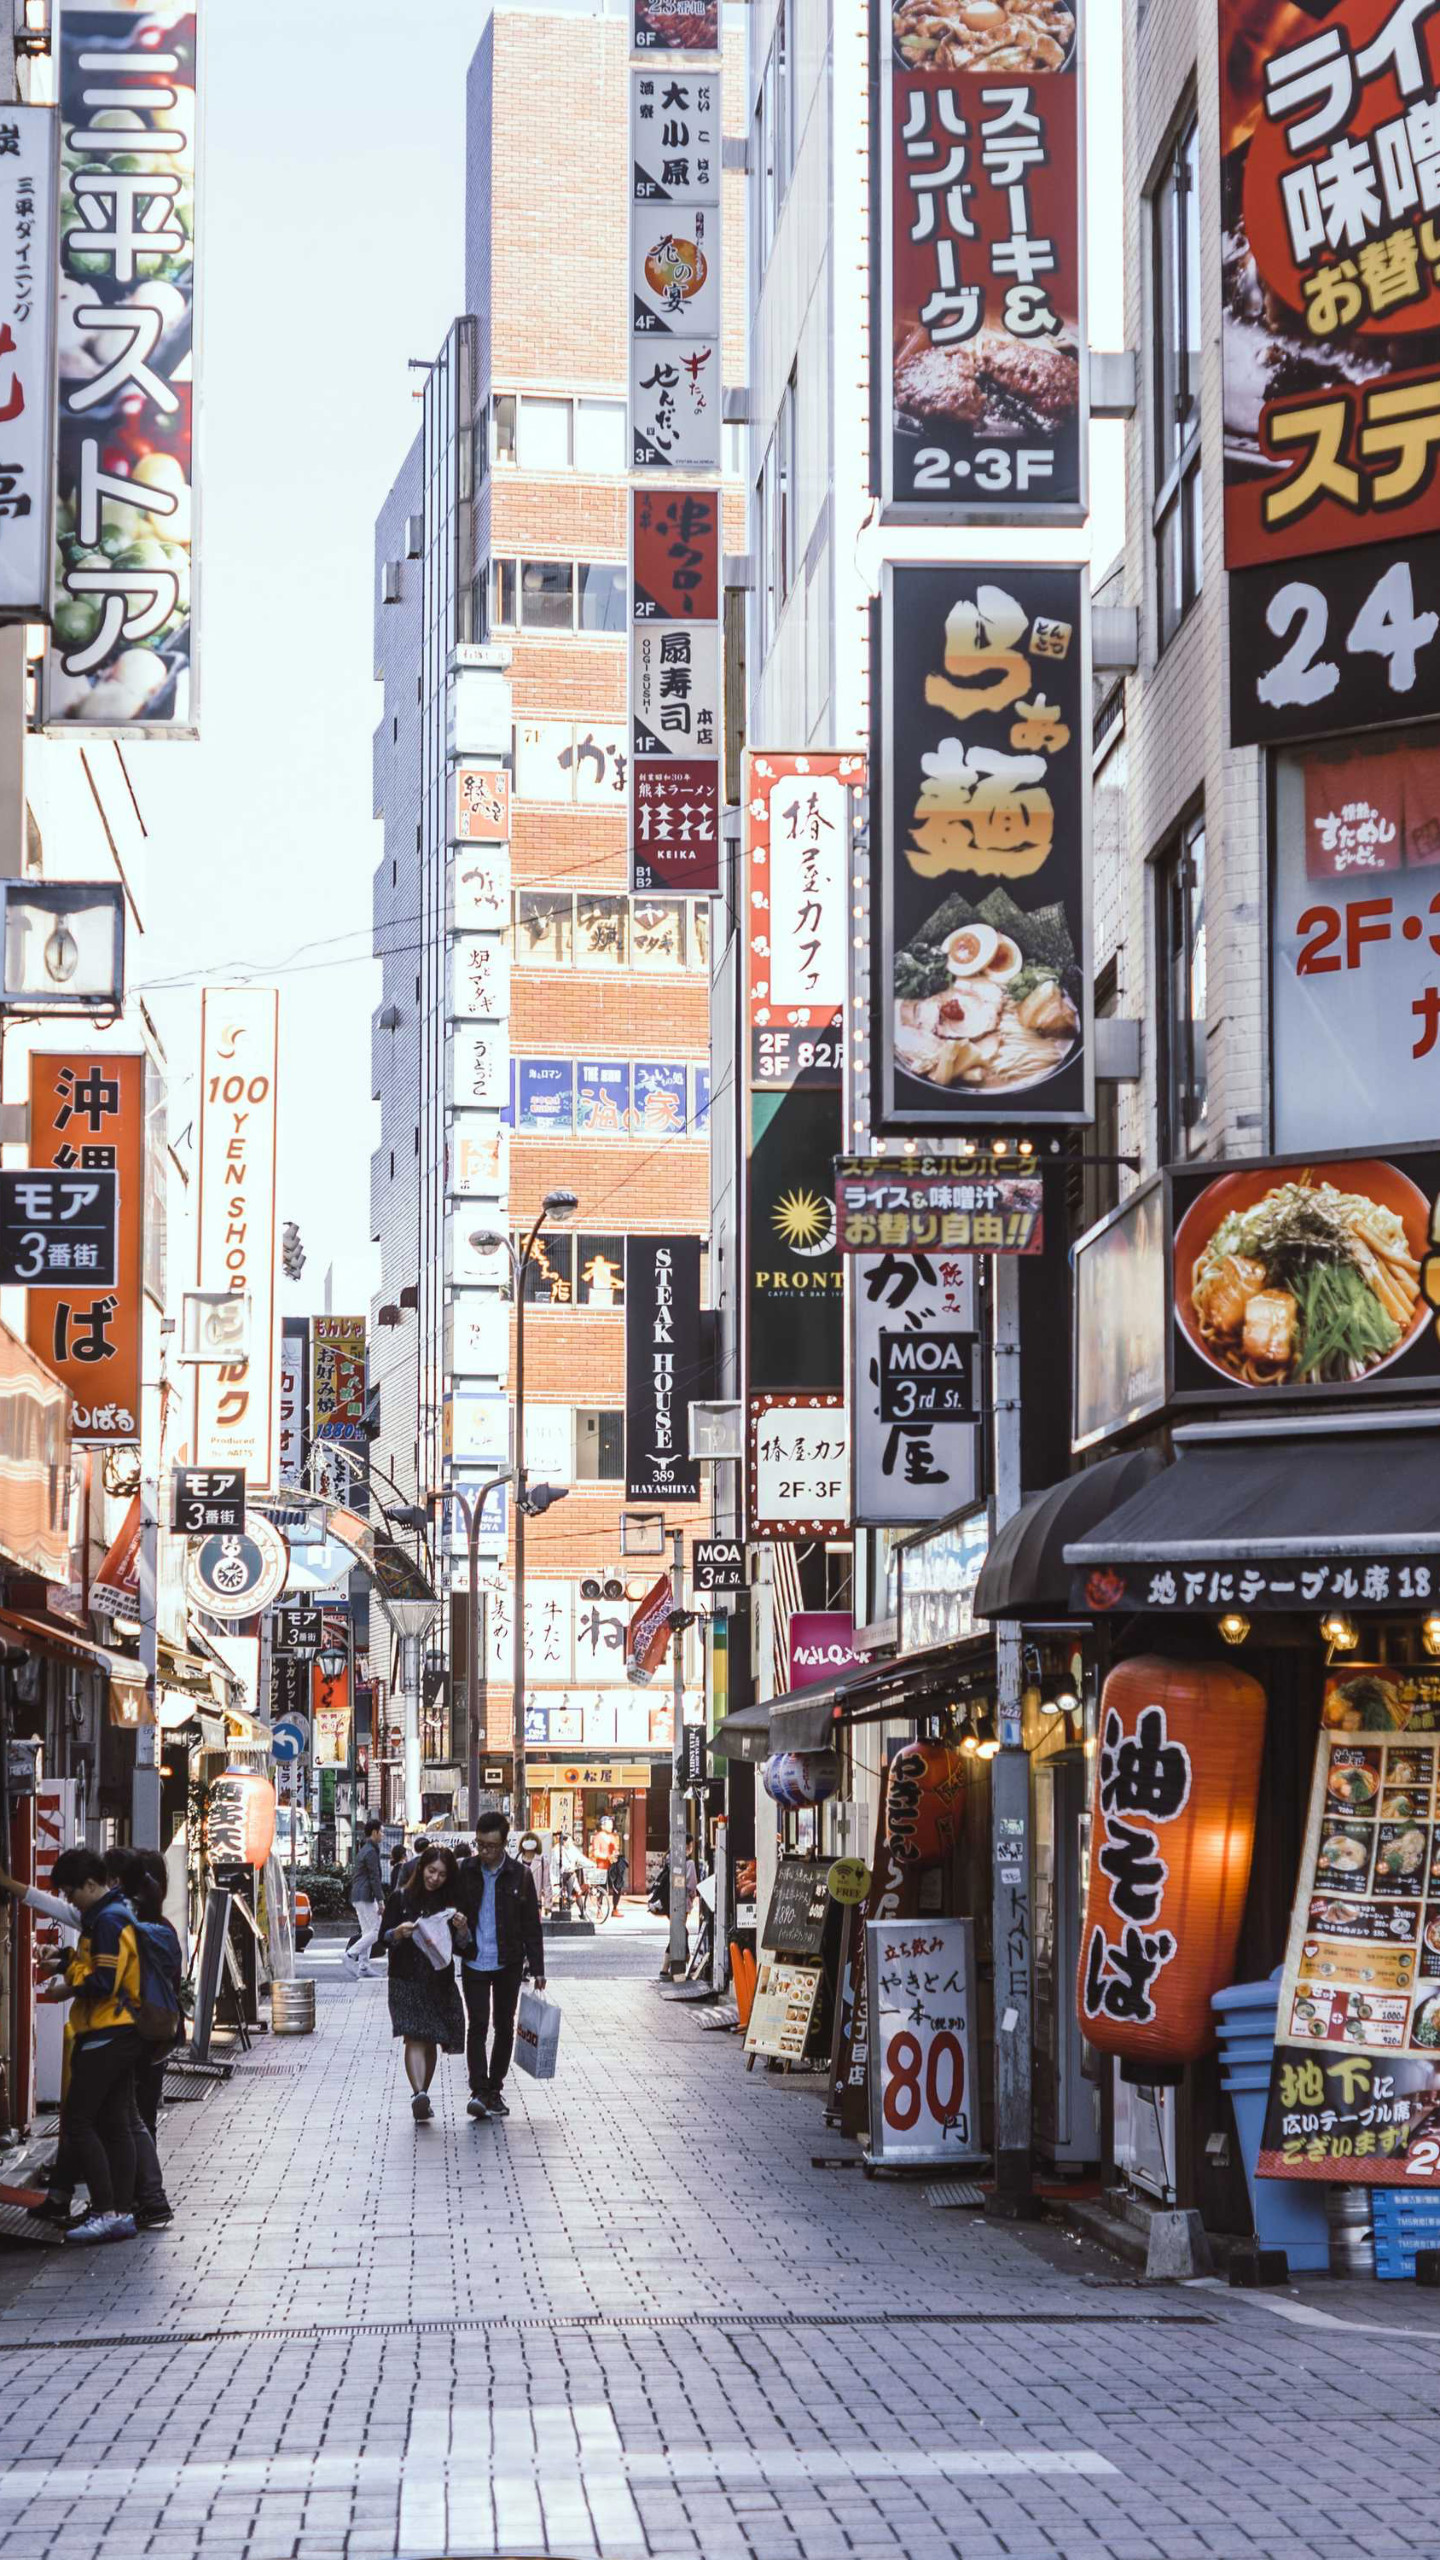 日本热闹繁华的城市街道手机壁纸